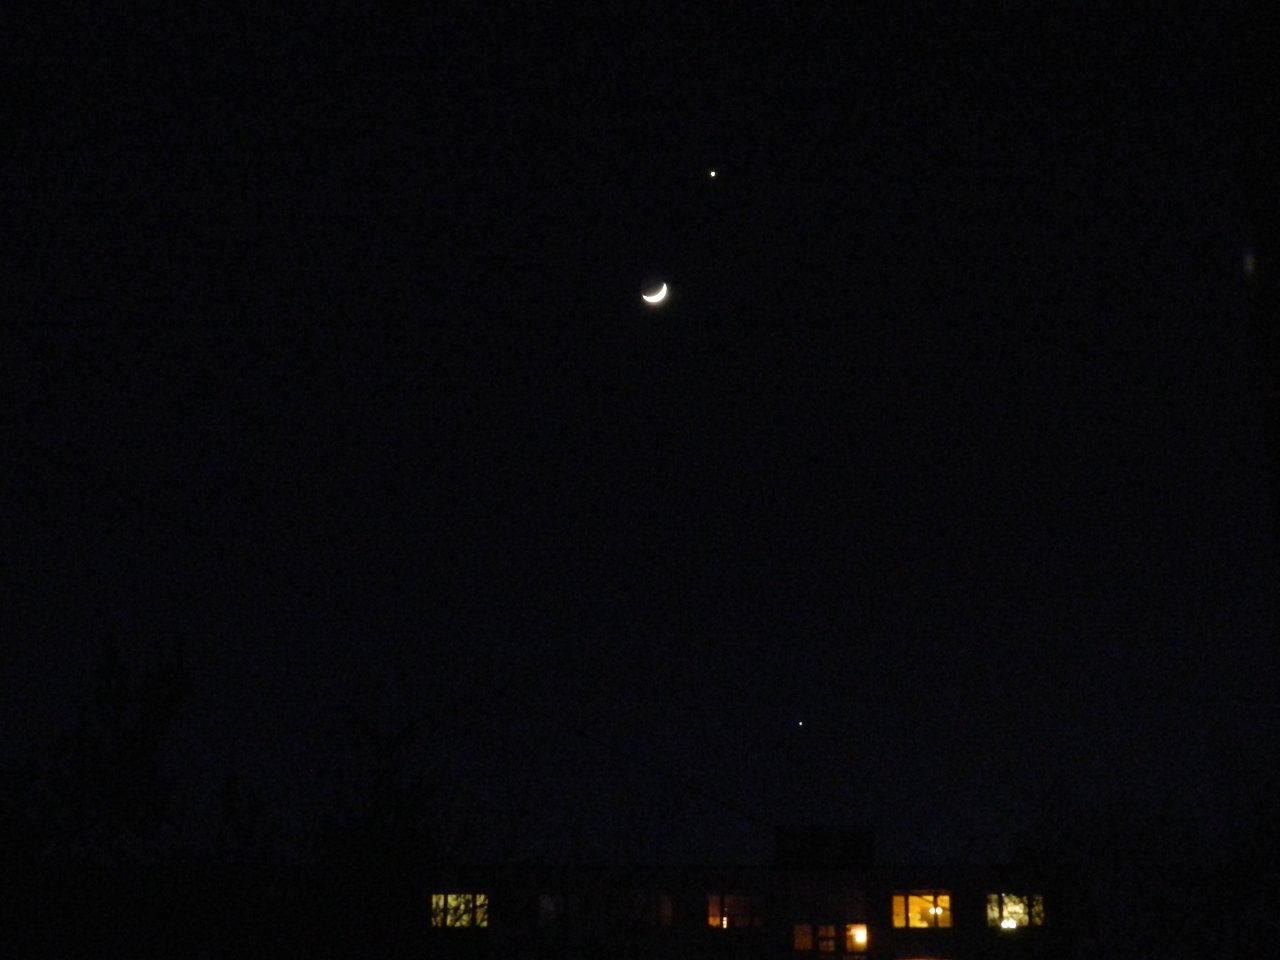 Mesiac + Venuša + Saturn = Krása